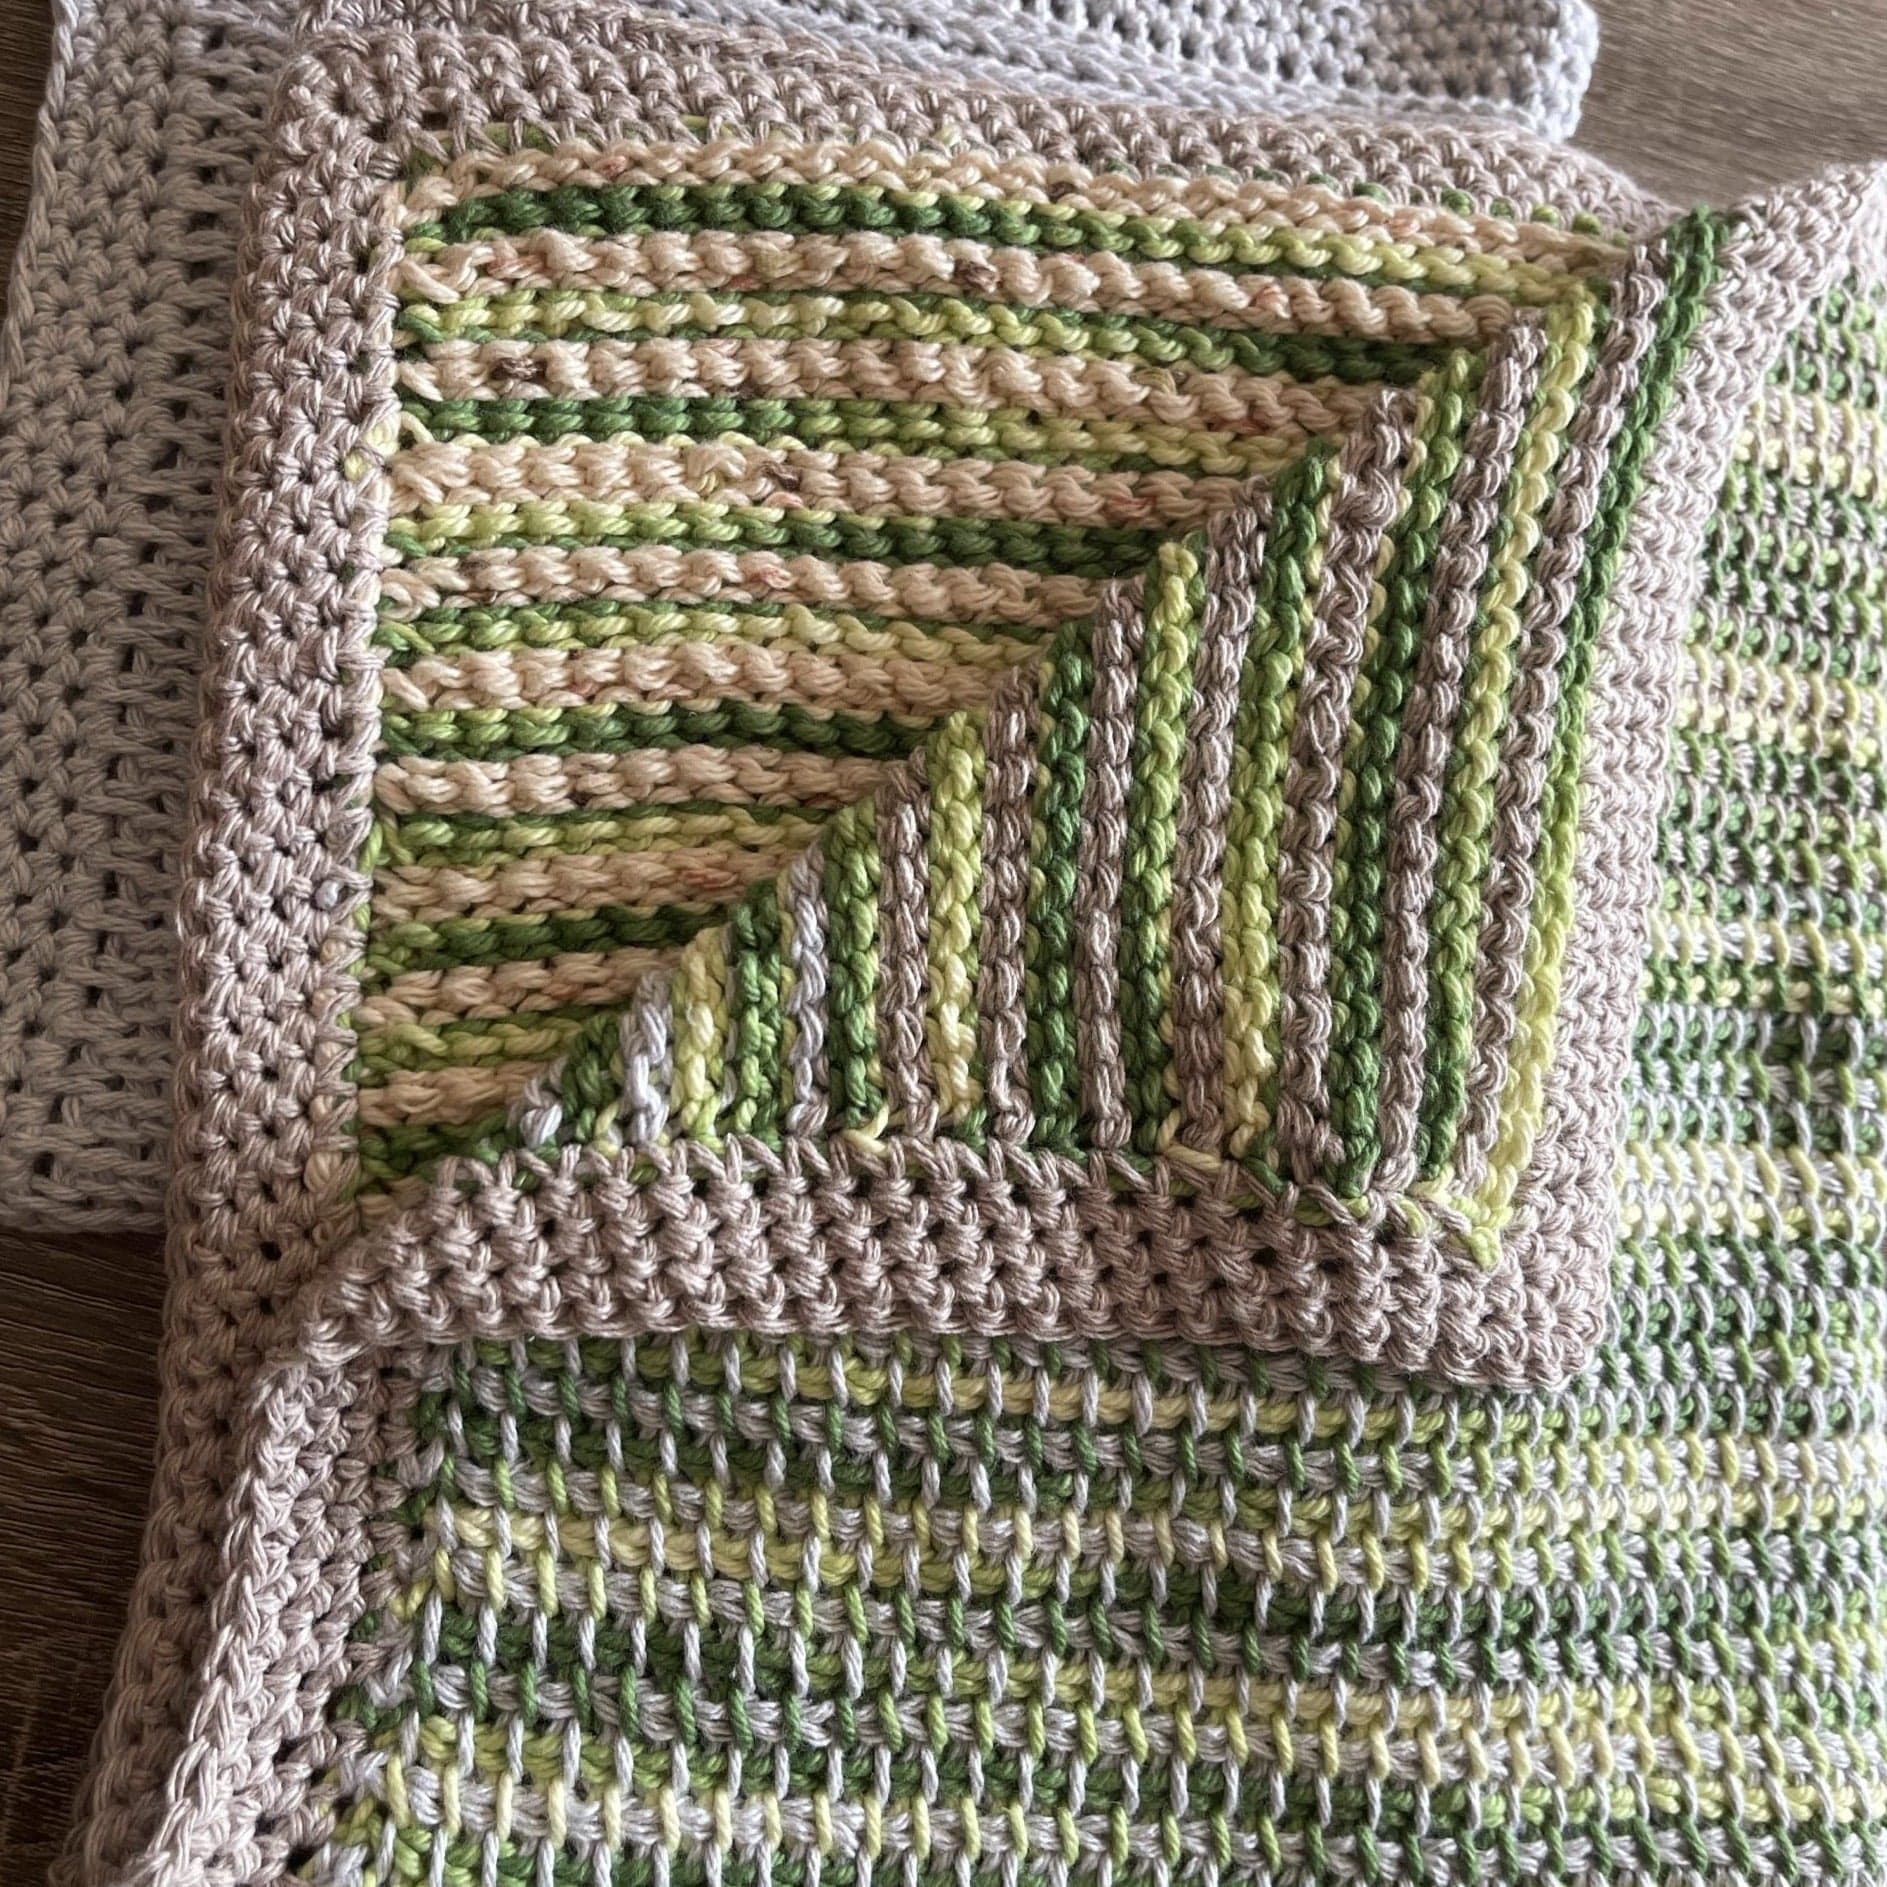 Tunisian Crochet Pet Blanket Pattern